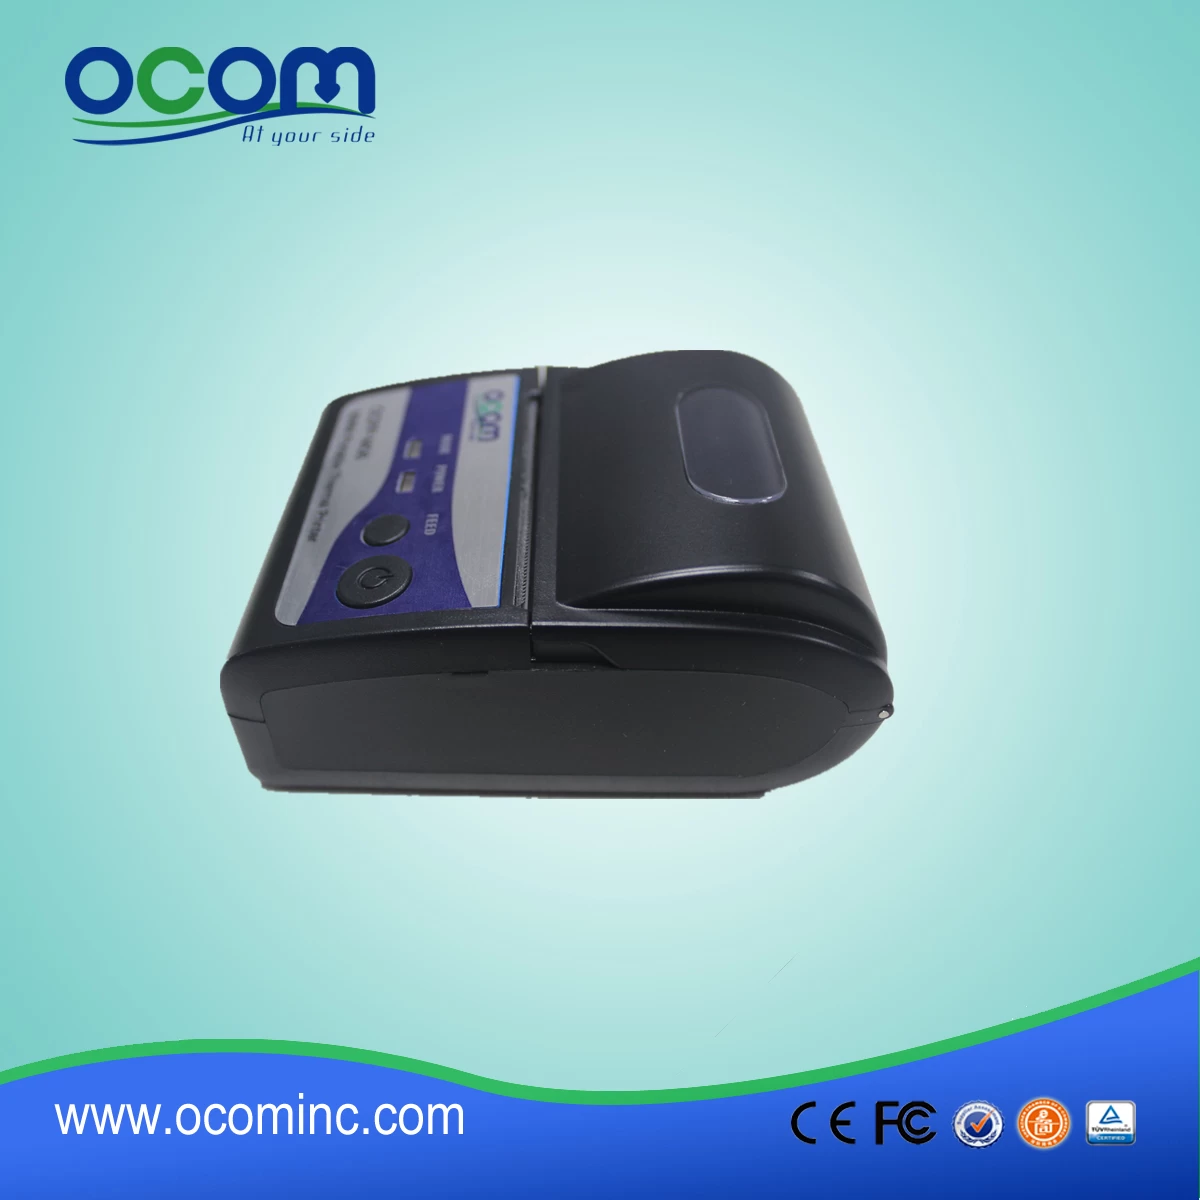 2016 new 58mm portable bluetooth mini printer for POS （OCPP-M06）